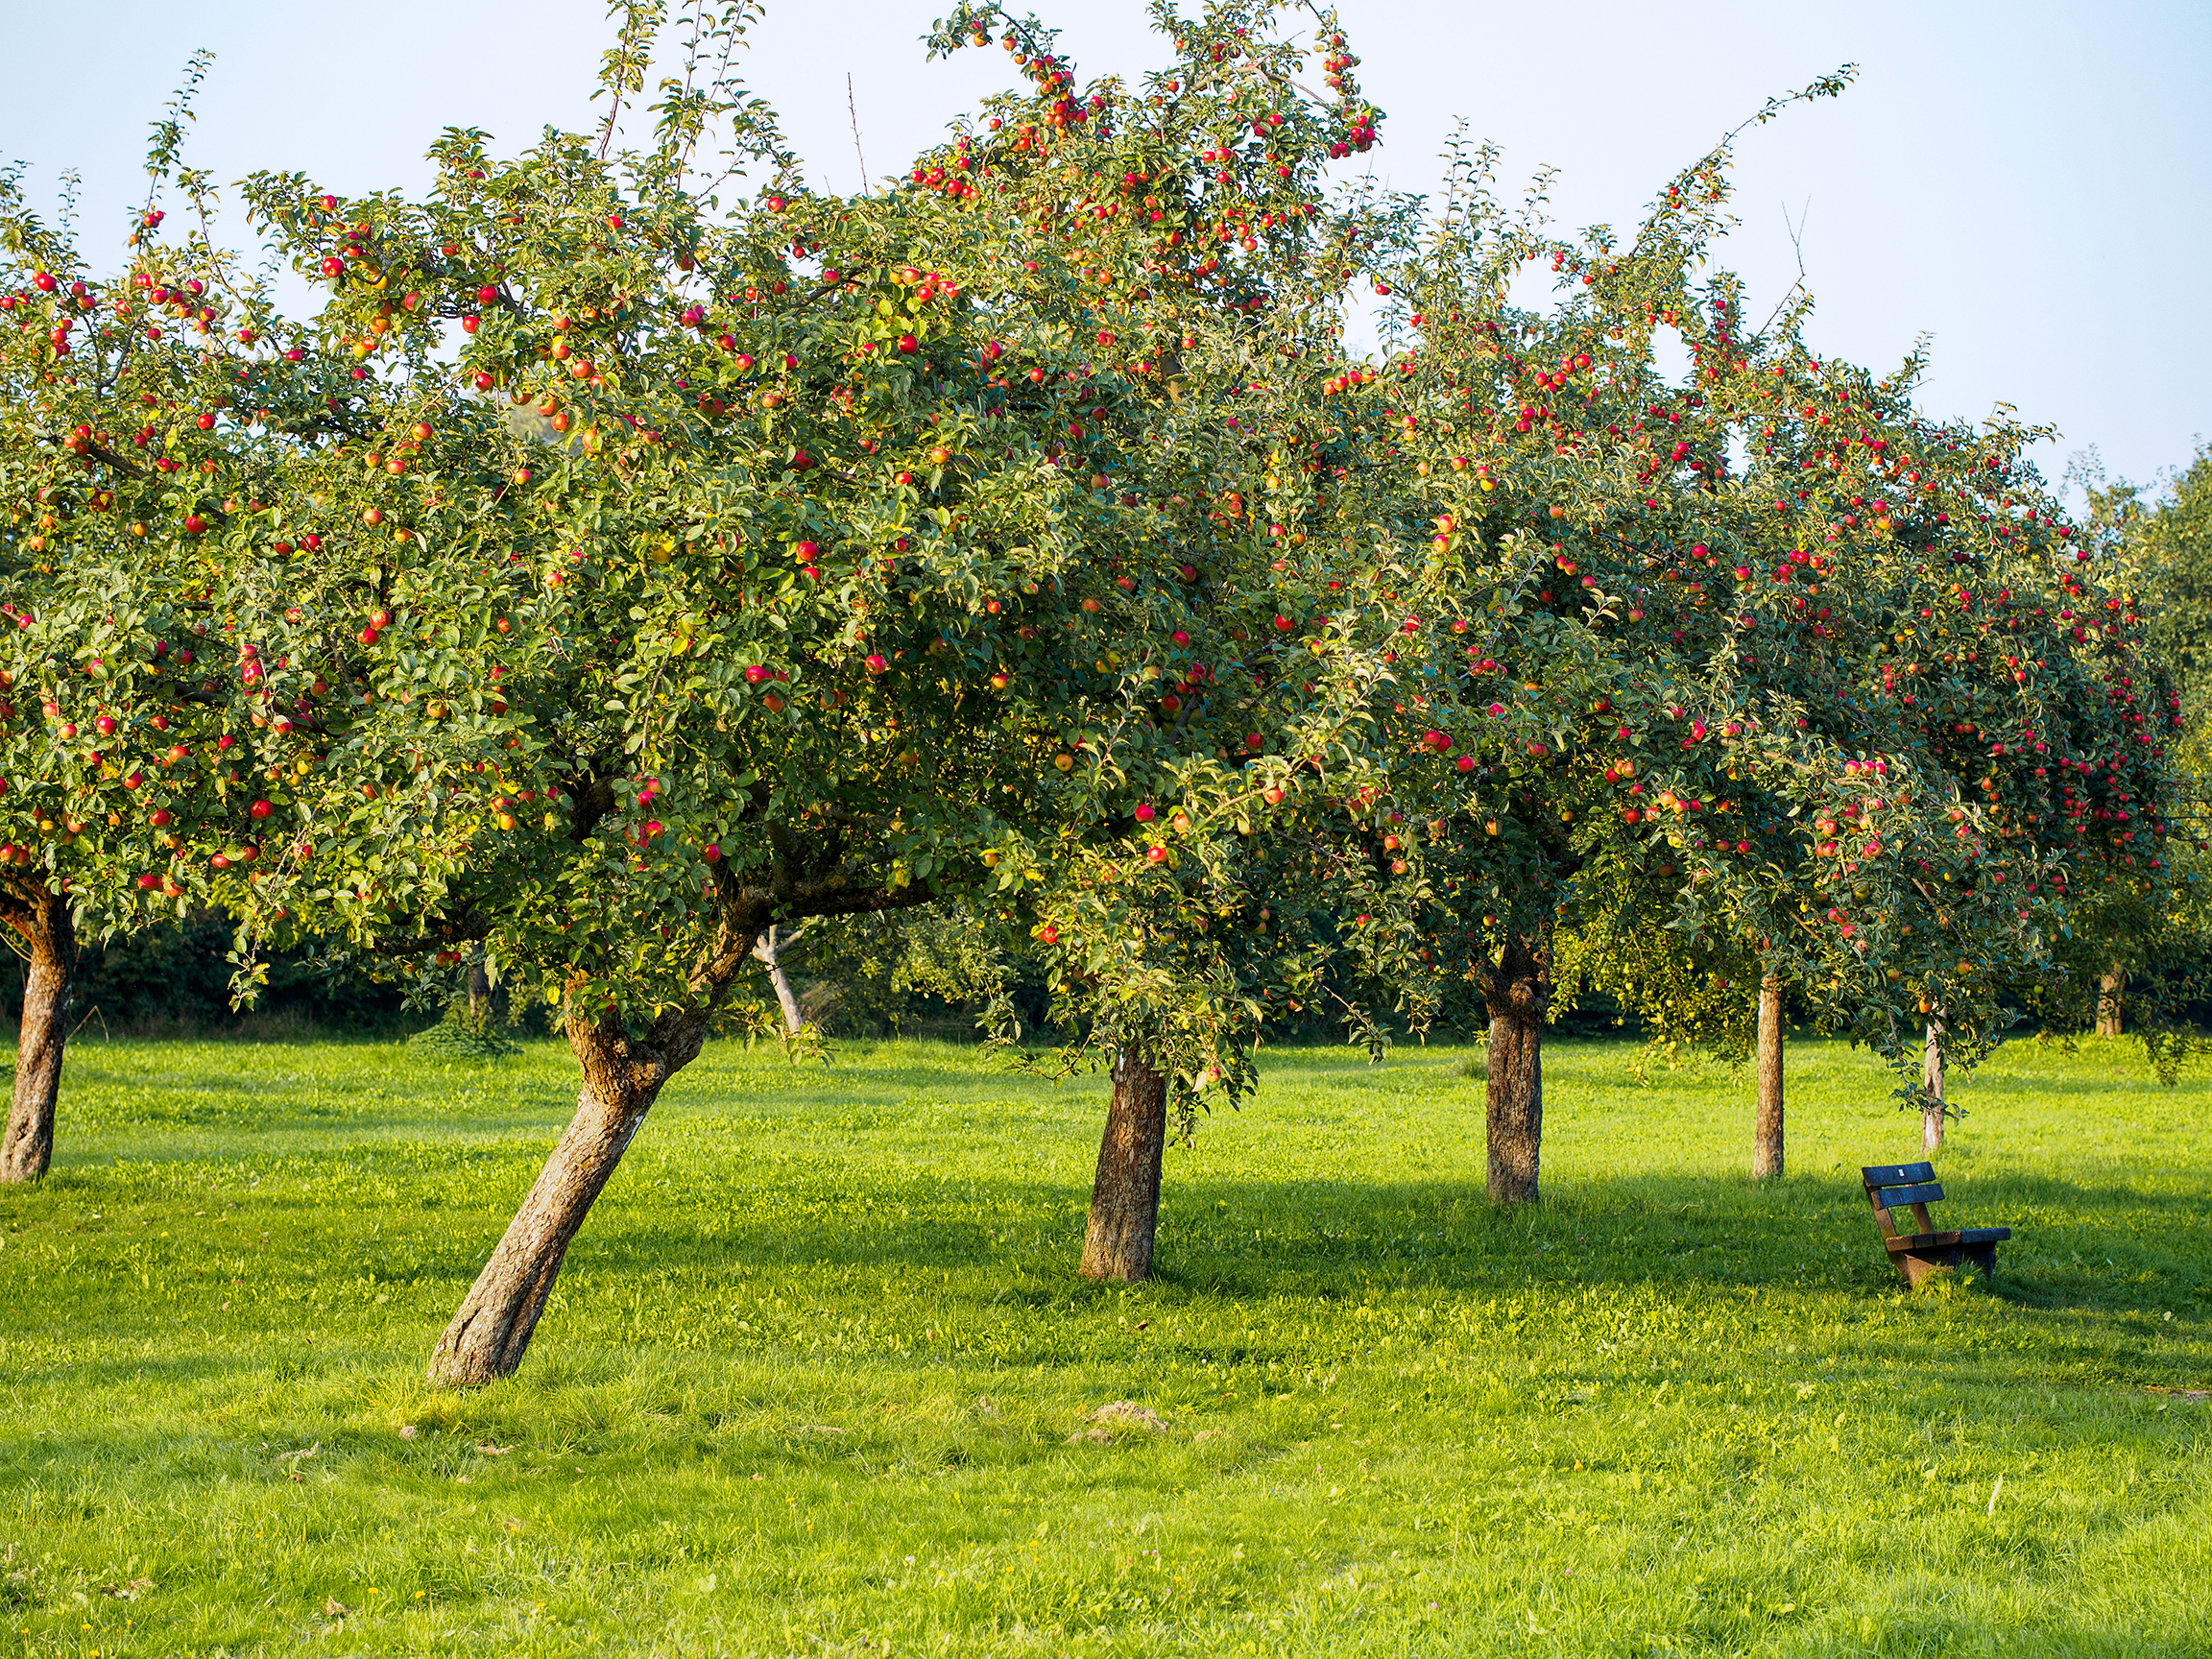 Regionaler Apfelmarkt ist, wenn engagierte Akteure aus den Bereichen Erwerbsobstbau, Streuobst, Naturschutz- und Landschaftsschutz mit einem abwechslungsreichen Rahmenprogramm rund um Apfel und Streuobst zeigen, dass Landschafts- und Naturschutz schmeckt und Spaß macht! 